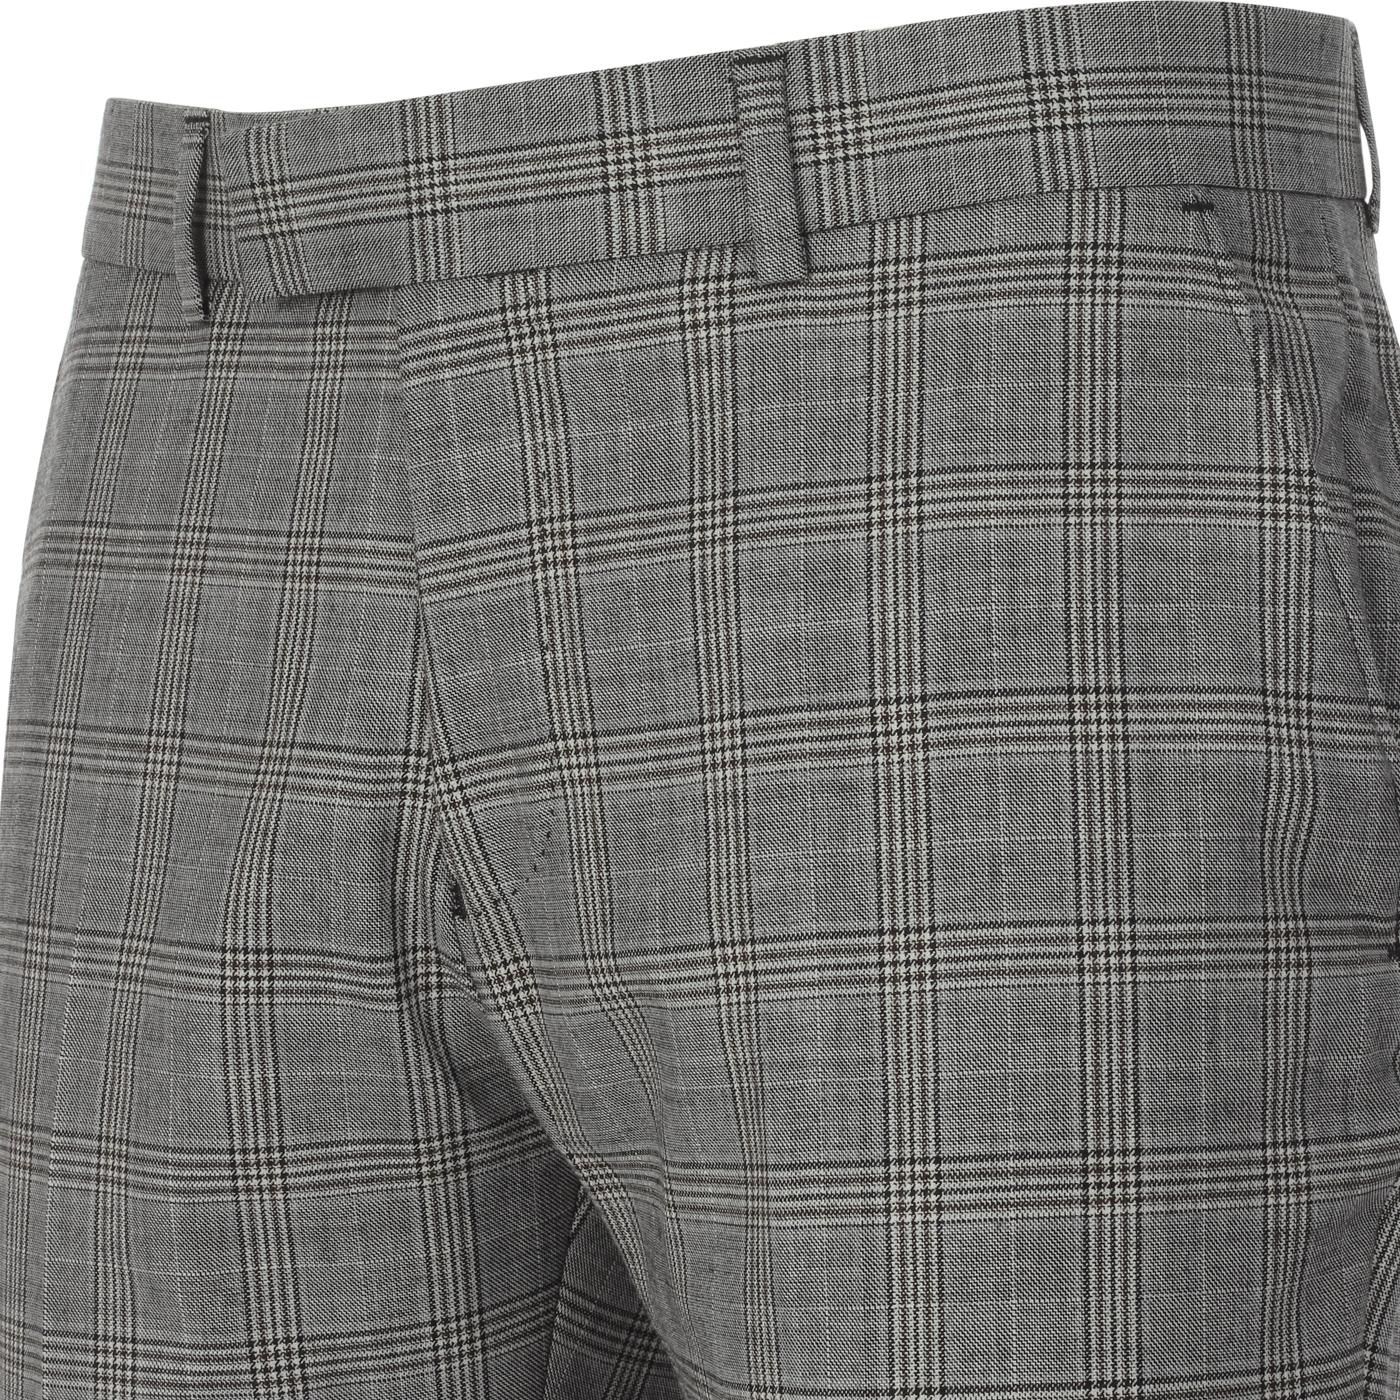 MADCAP ENGLAND 60s Mod POW Check Suit Trousers Grey